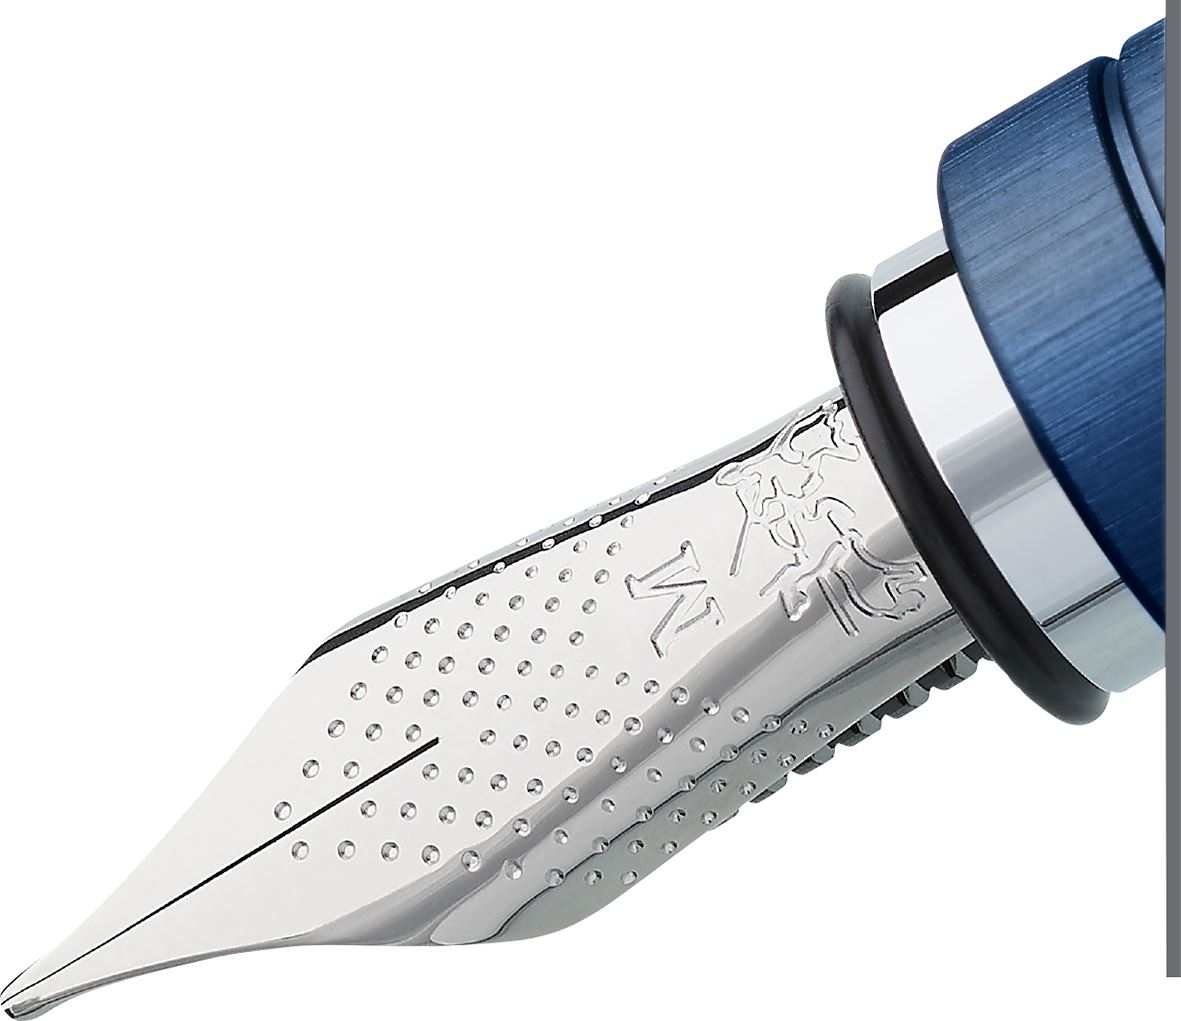 Faber-Castell - Essentio Aluminium fountain pen, EF, blue